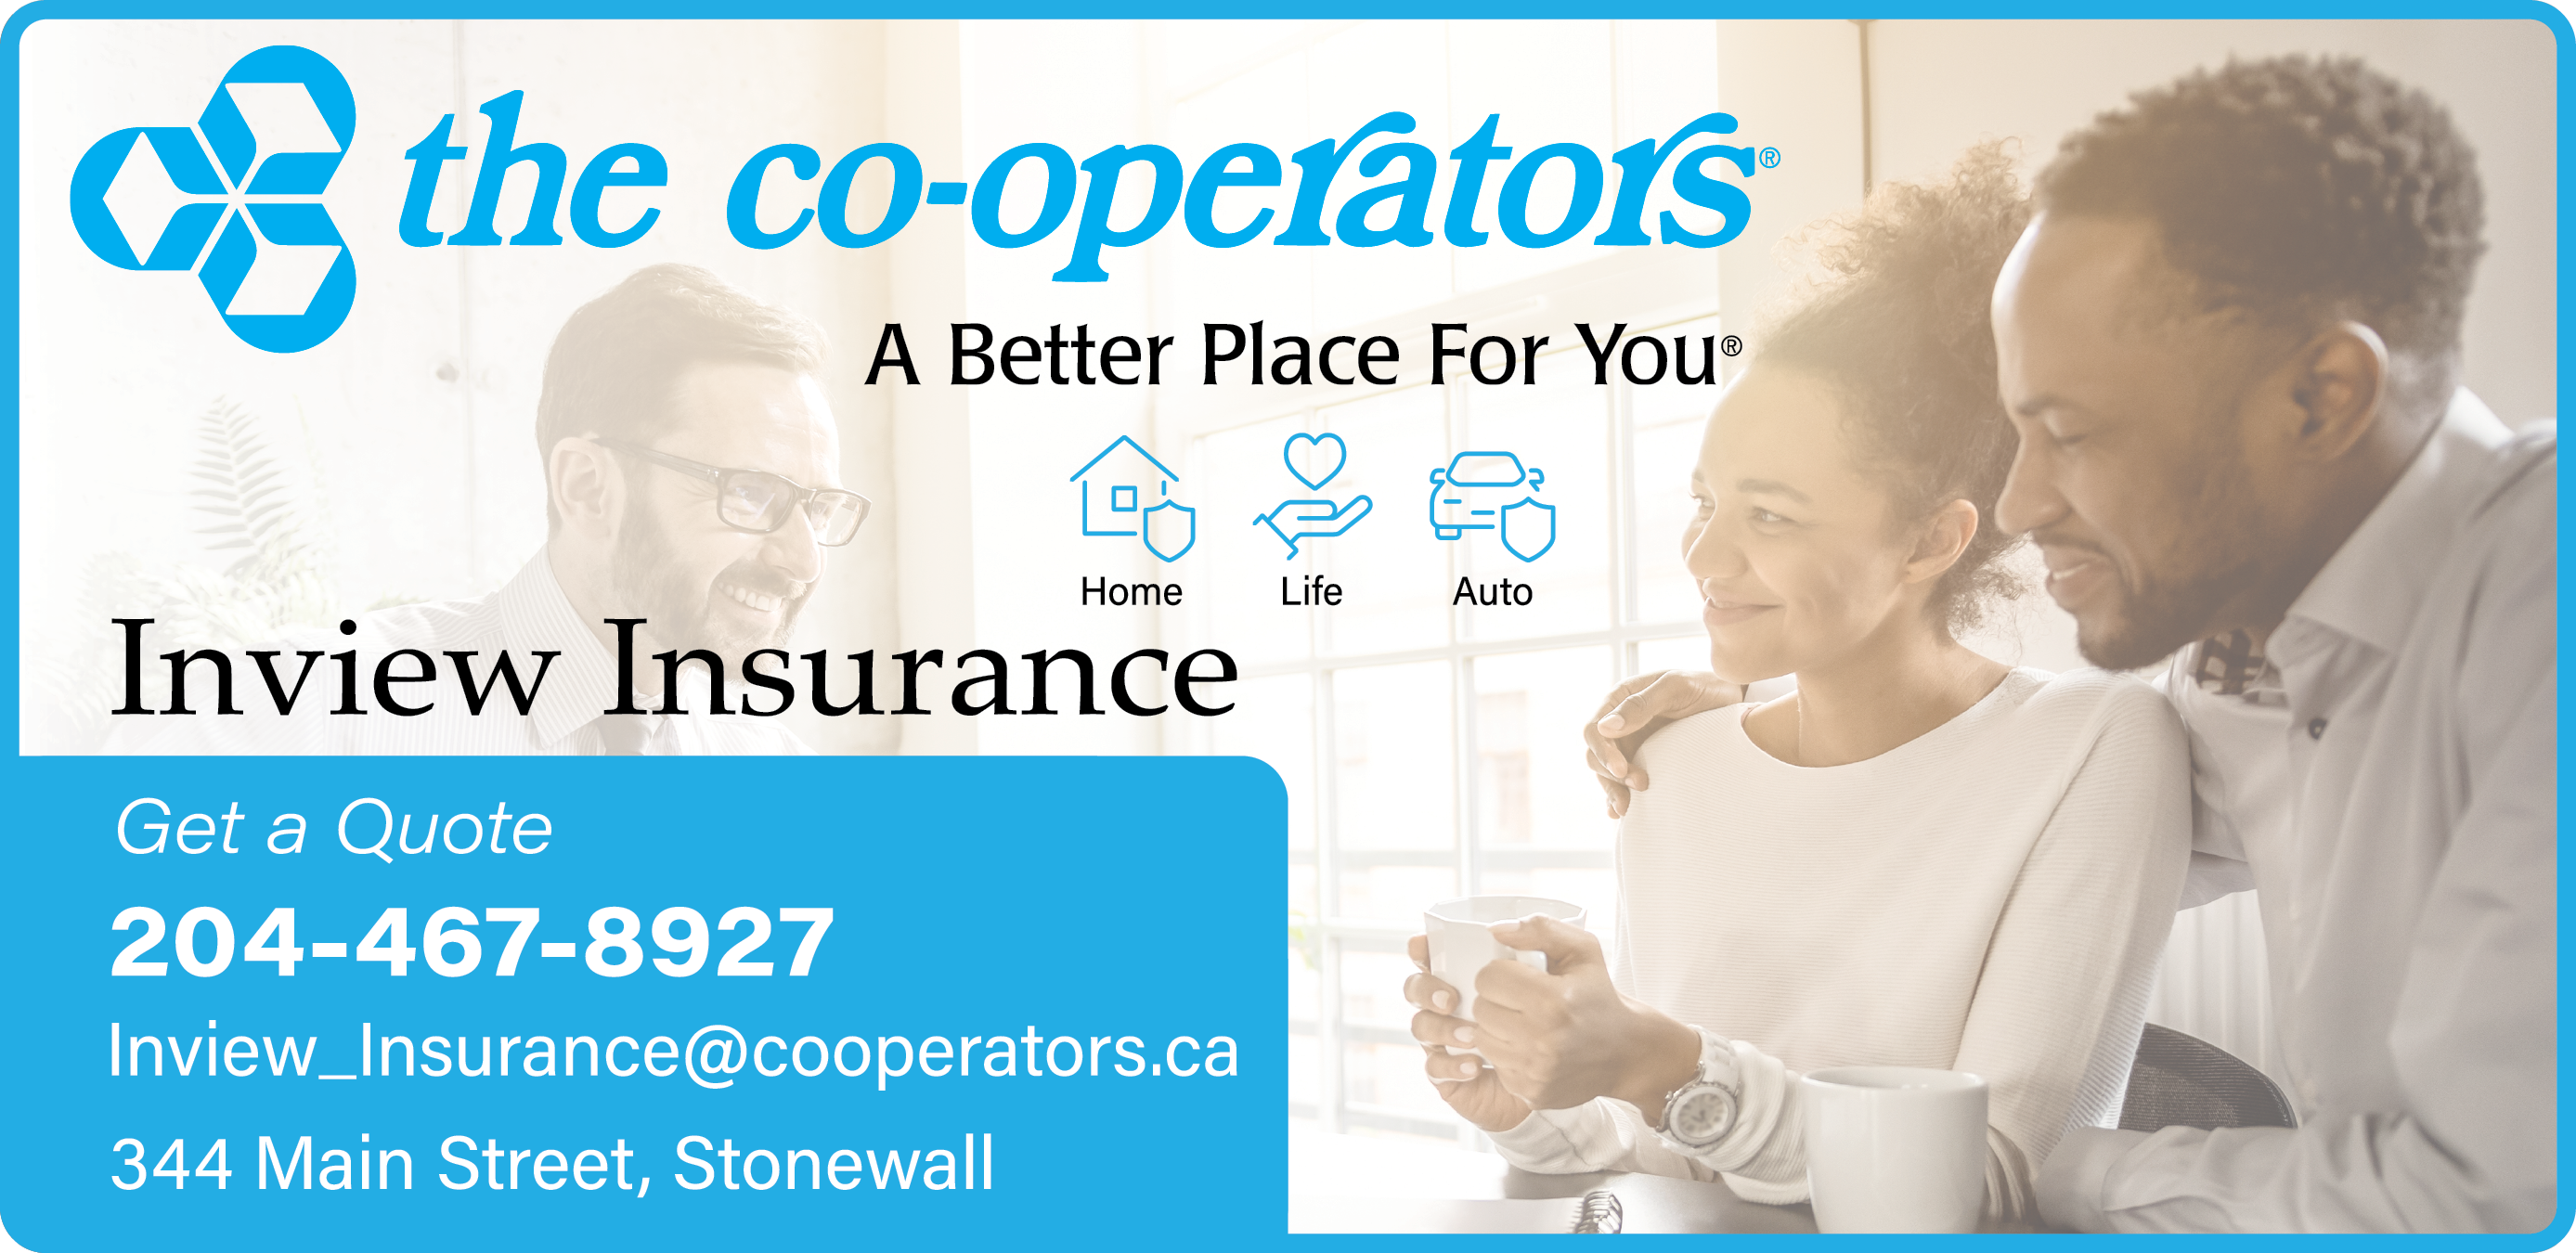 Inview Insurance & The Co-Operators